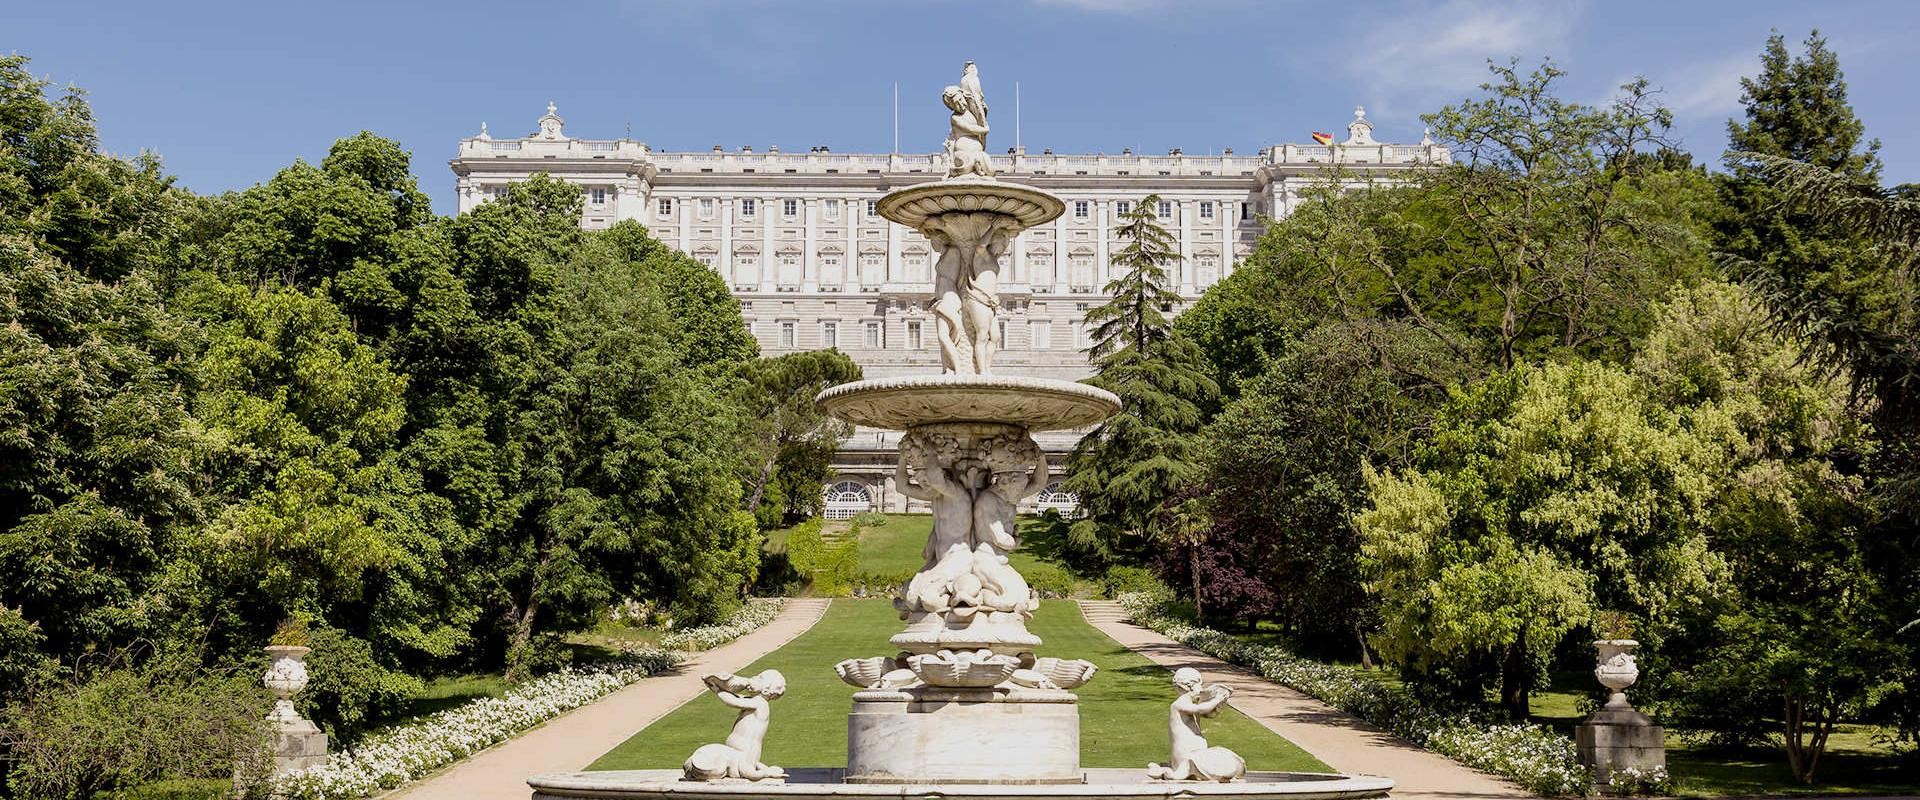 10 curiosidades sobre el Palacio Real de Madrid